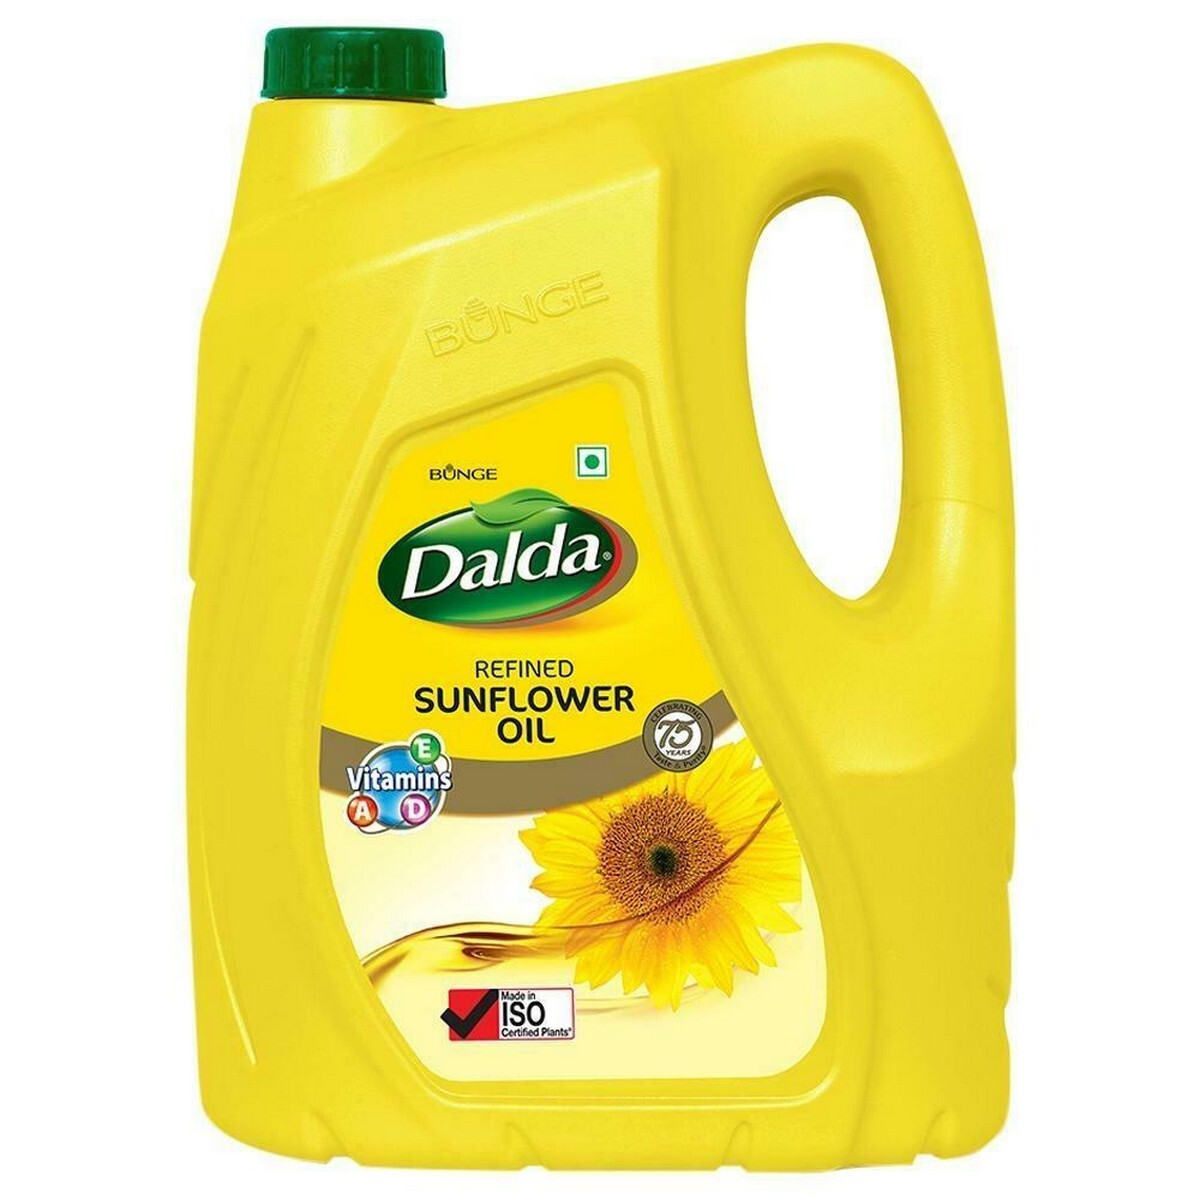 Dalda Sunflower Oil 5Ltr